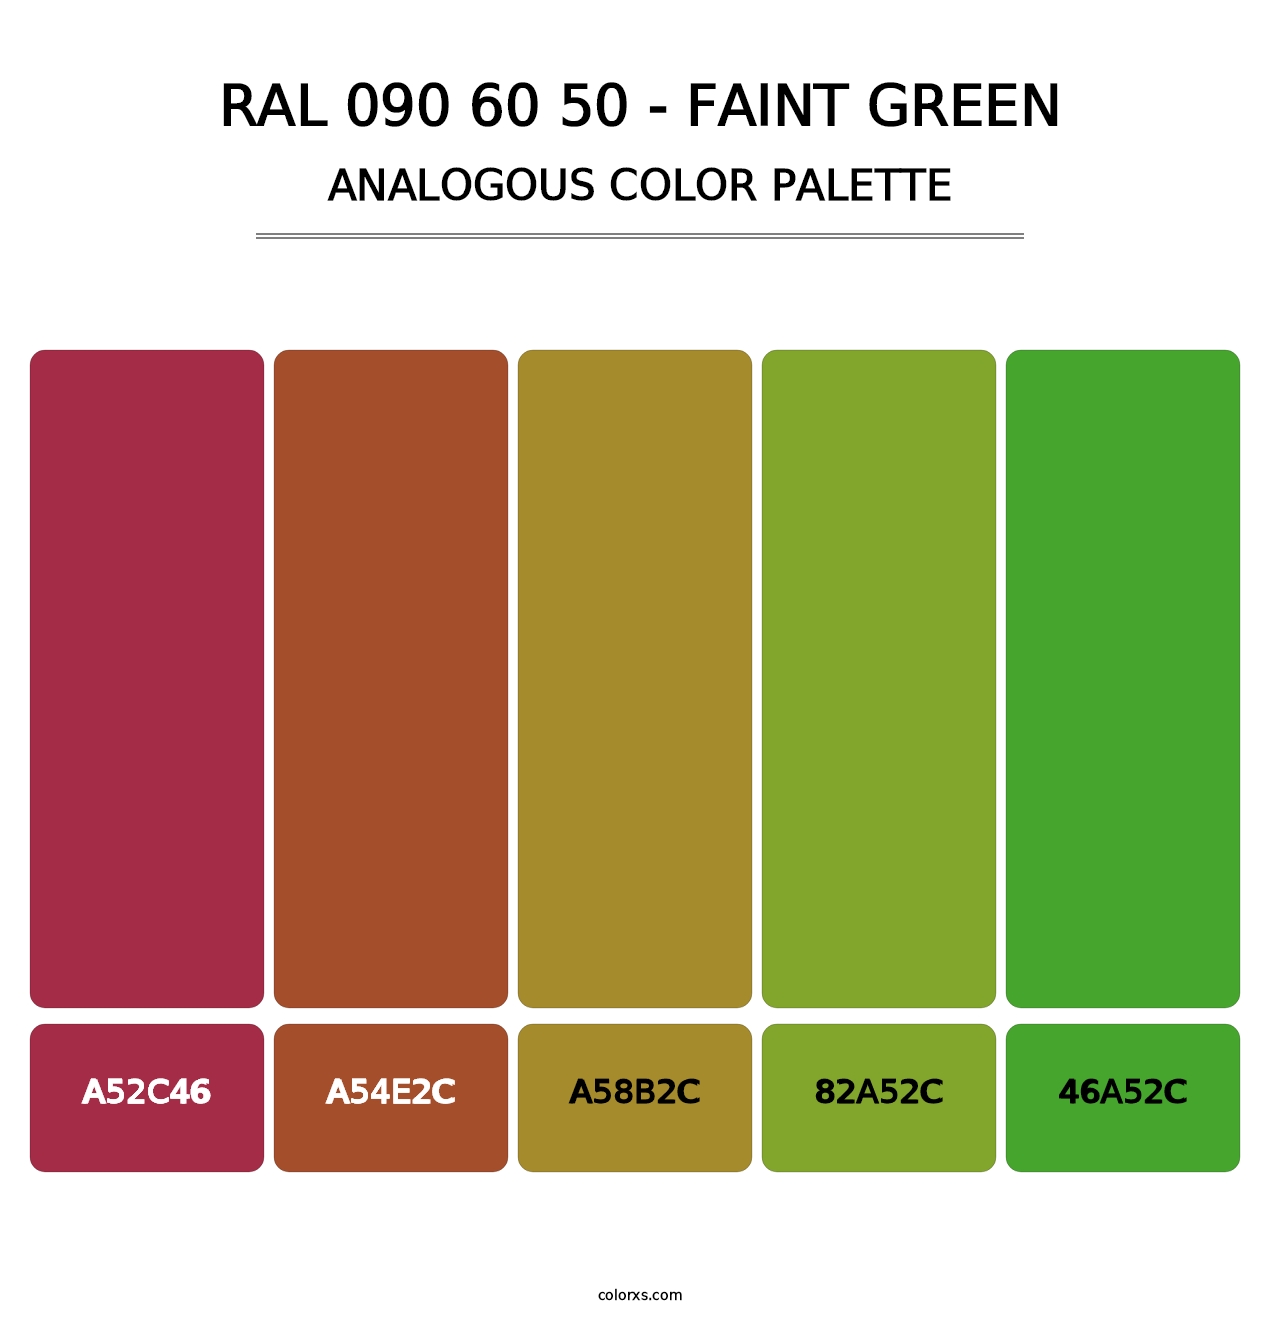 RAL 090 60 50 - Faint Green - Analogous Color Palette